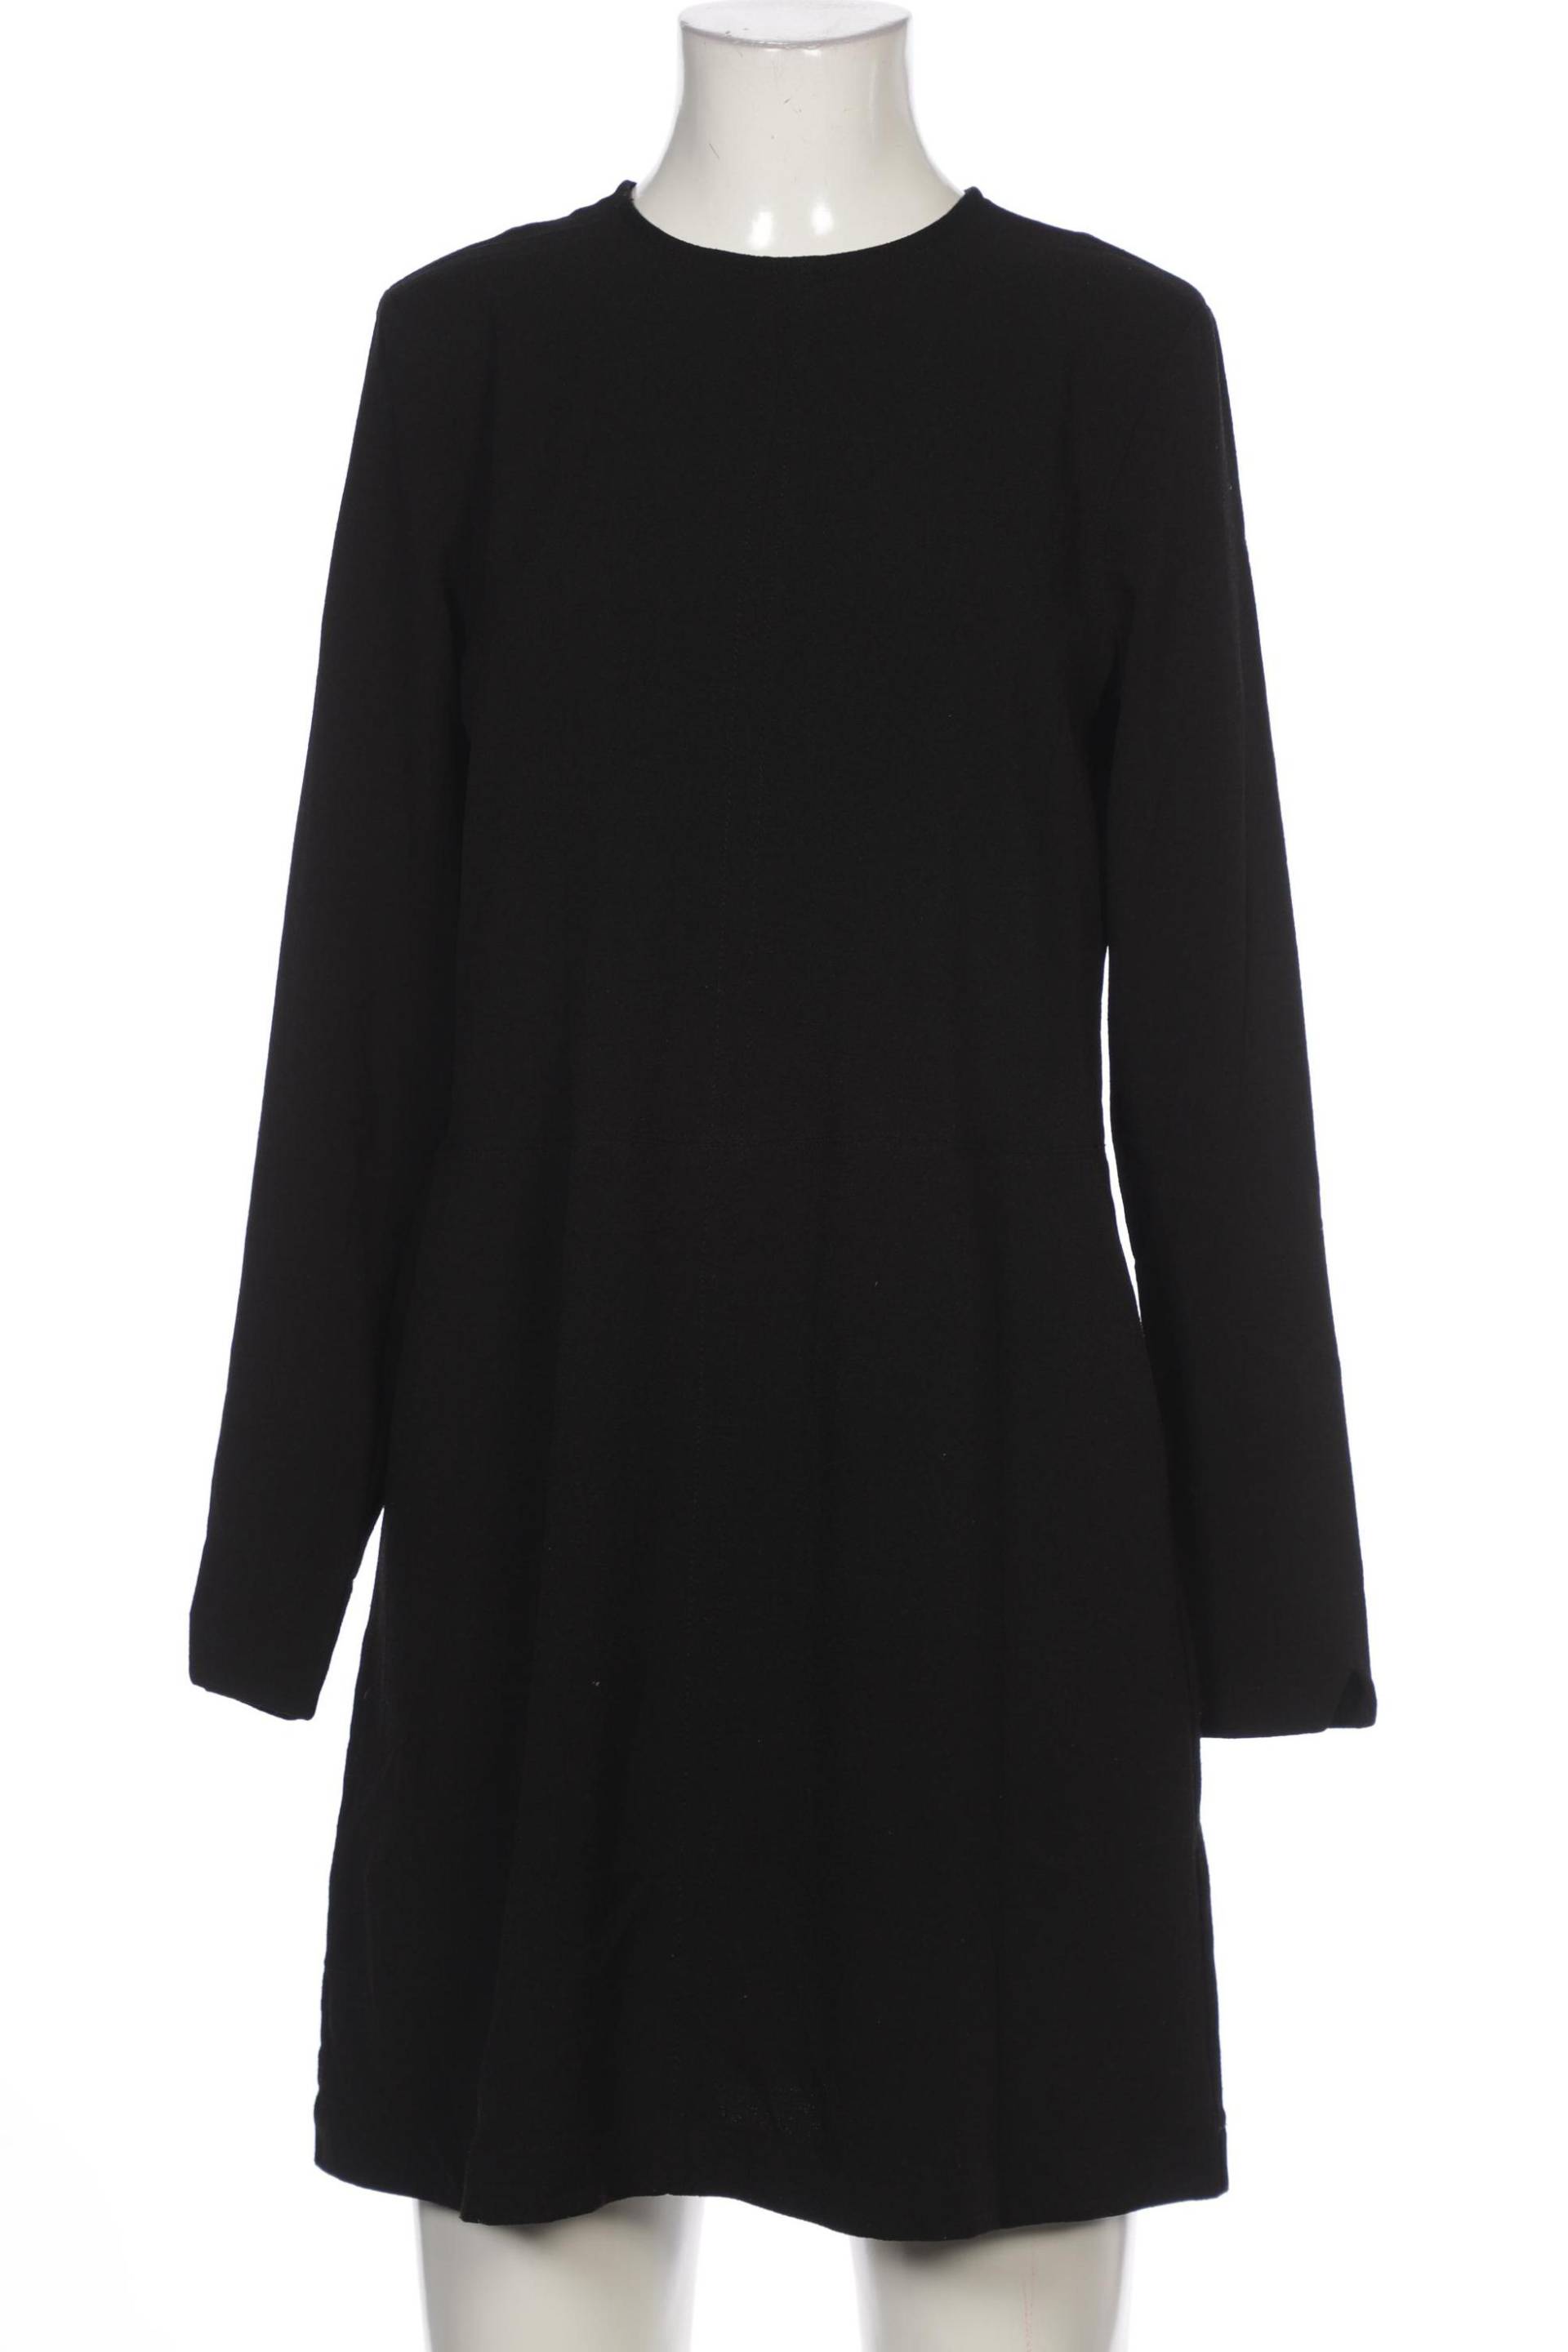 Ganni Damen Kleid, schwarz, Gr. 34 von Ganni